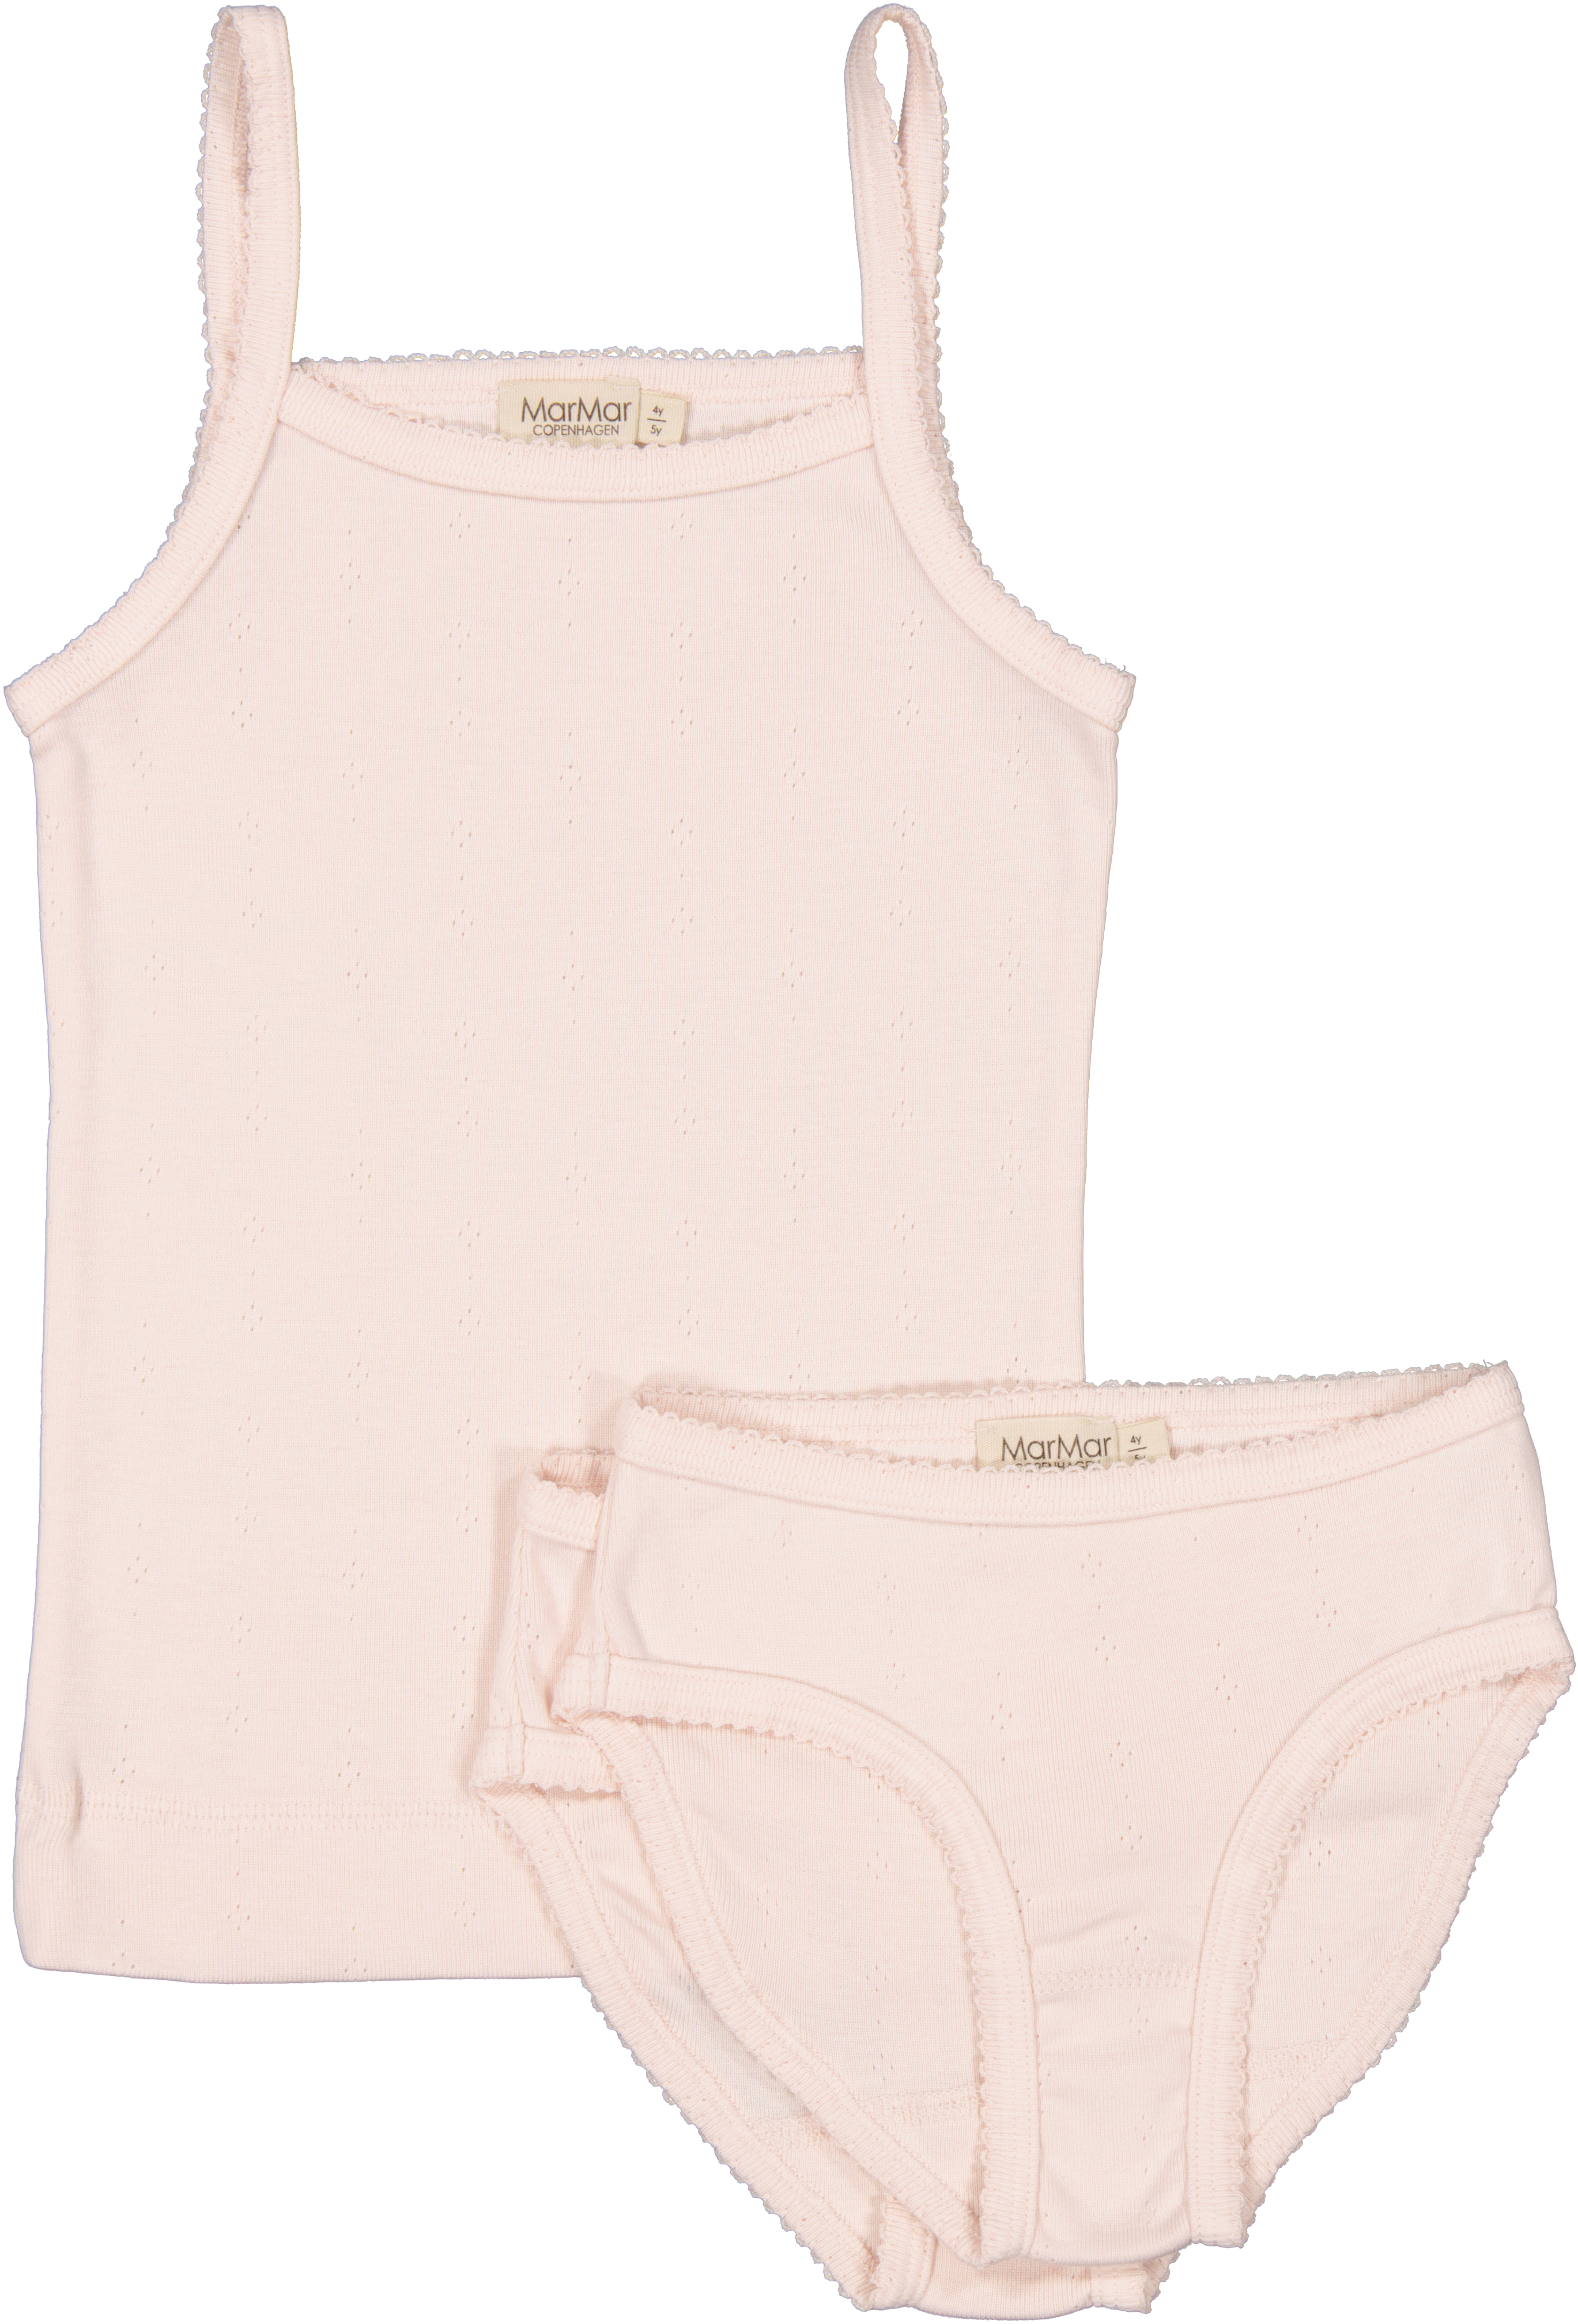 MarMar Copenhagen Underwear Set - Pink Dahlia